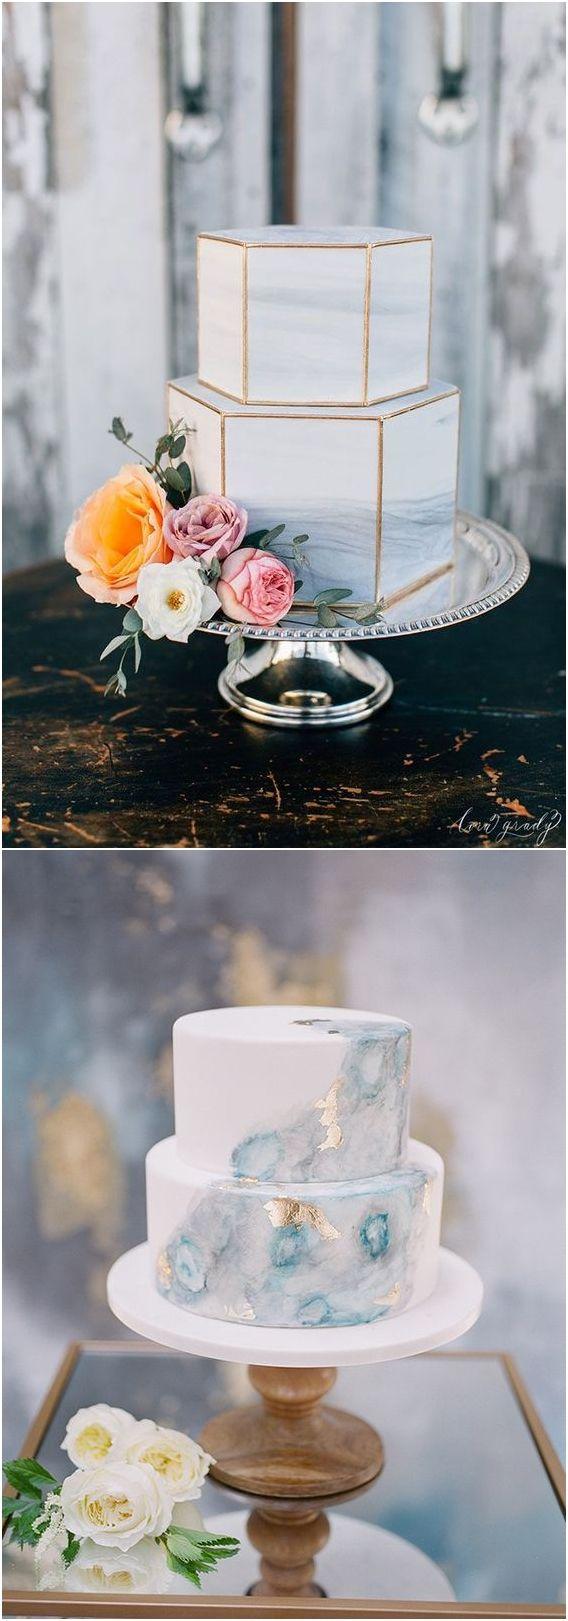 Hochzeit - Top 5 Wedding Cake Trends In 2018